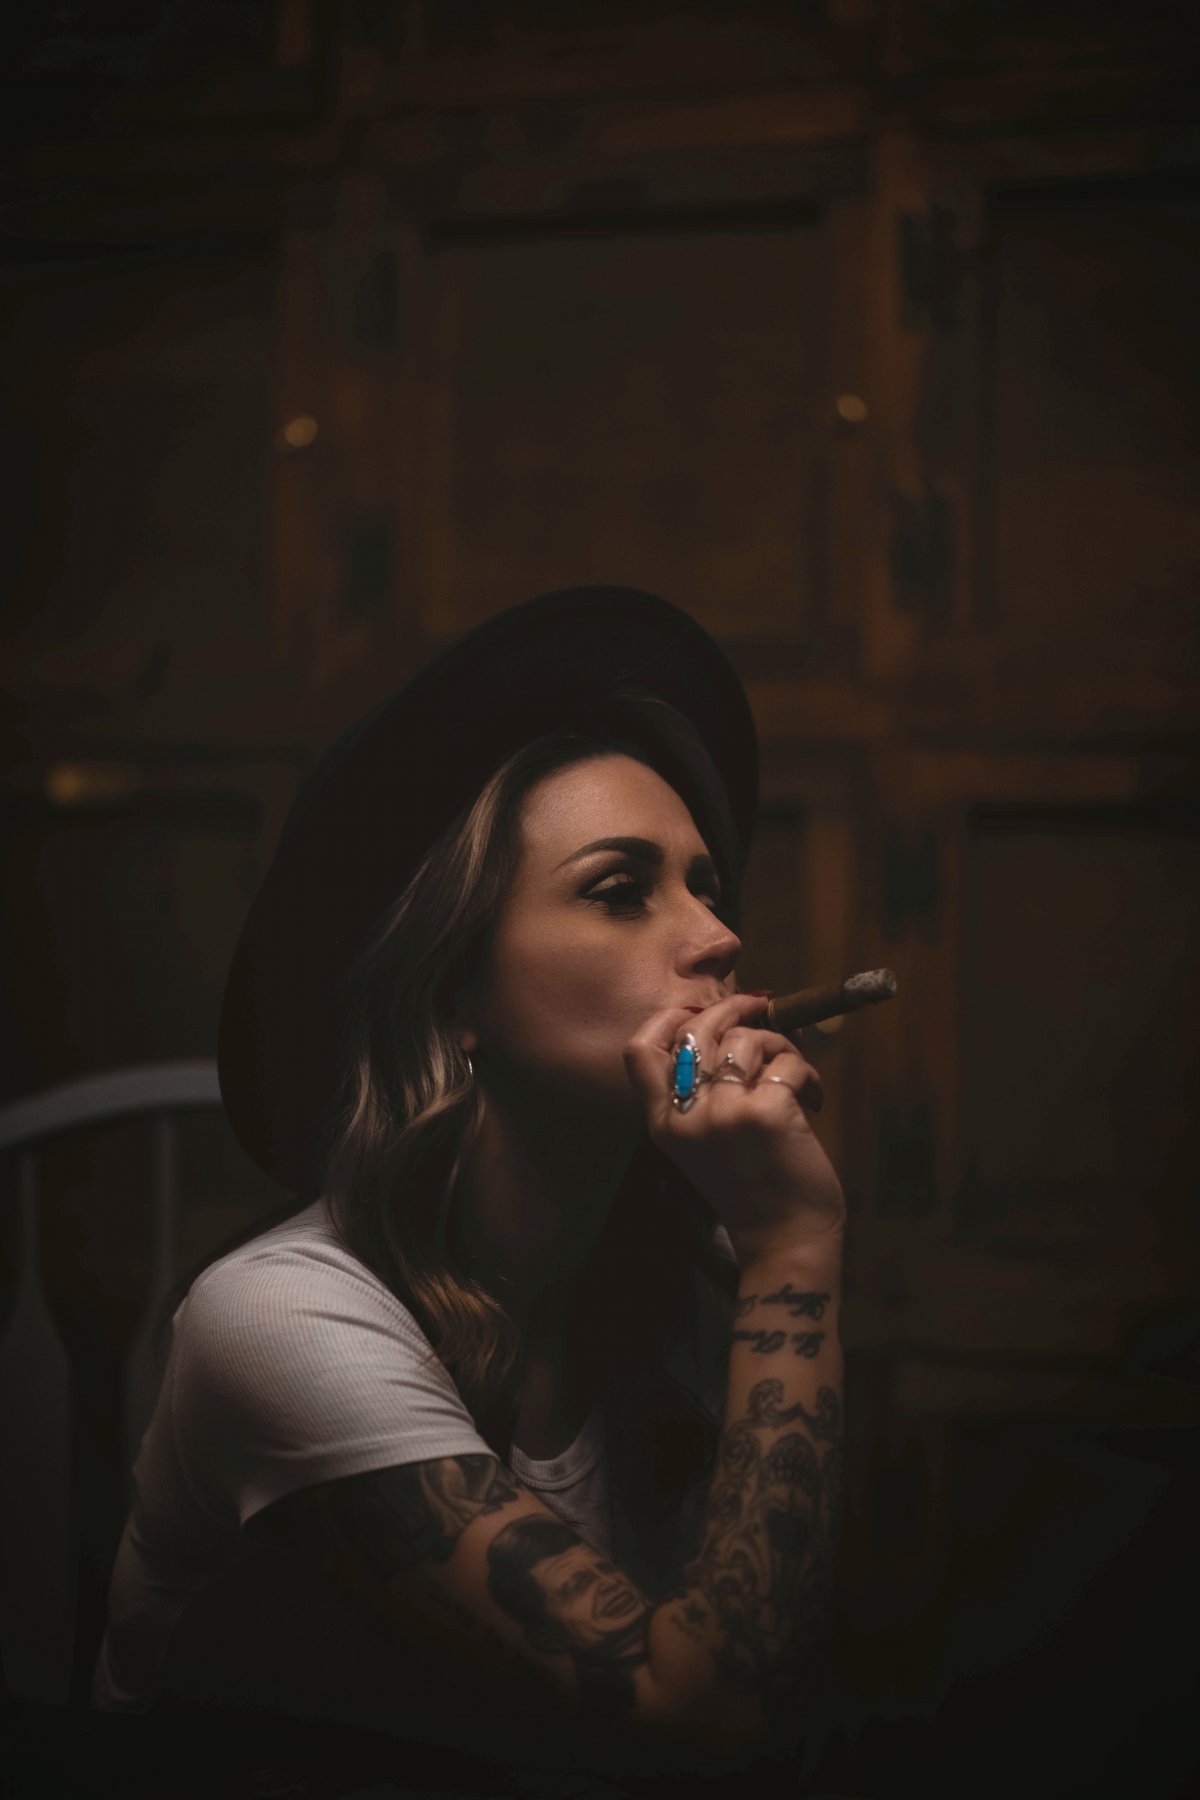 纹身抽烟喝酒的女孩图片